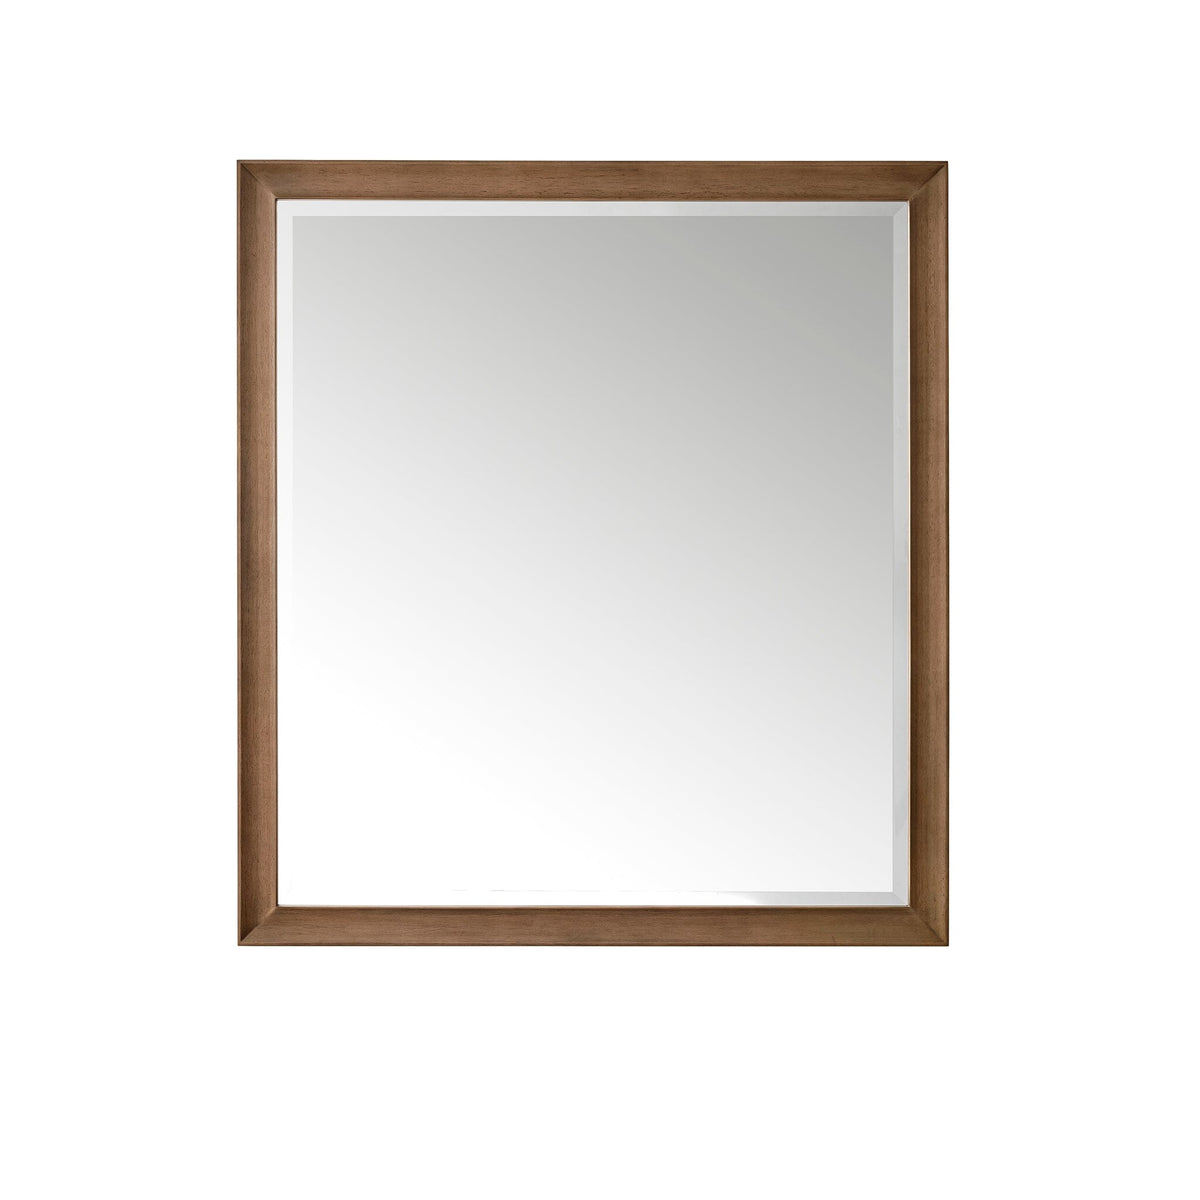 36" Glenbrooke Mirror, Whitewashed Walnut